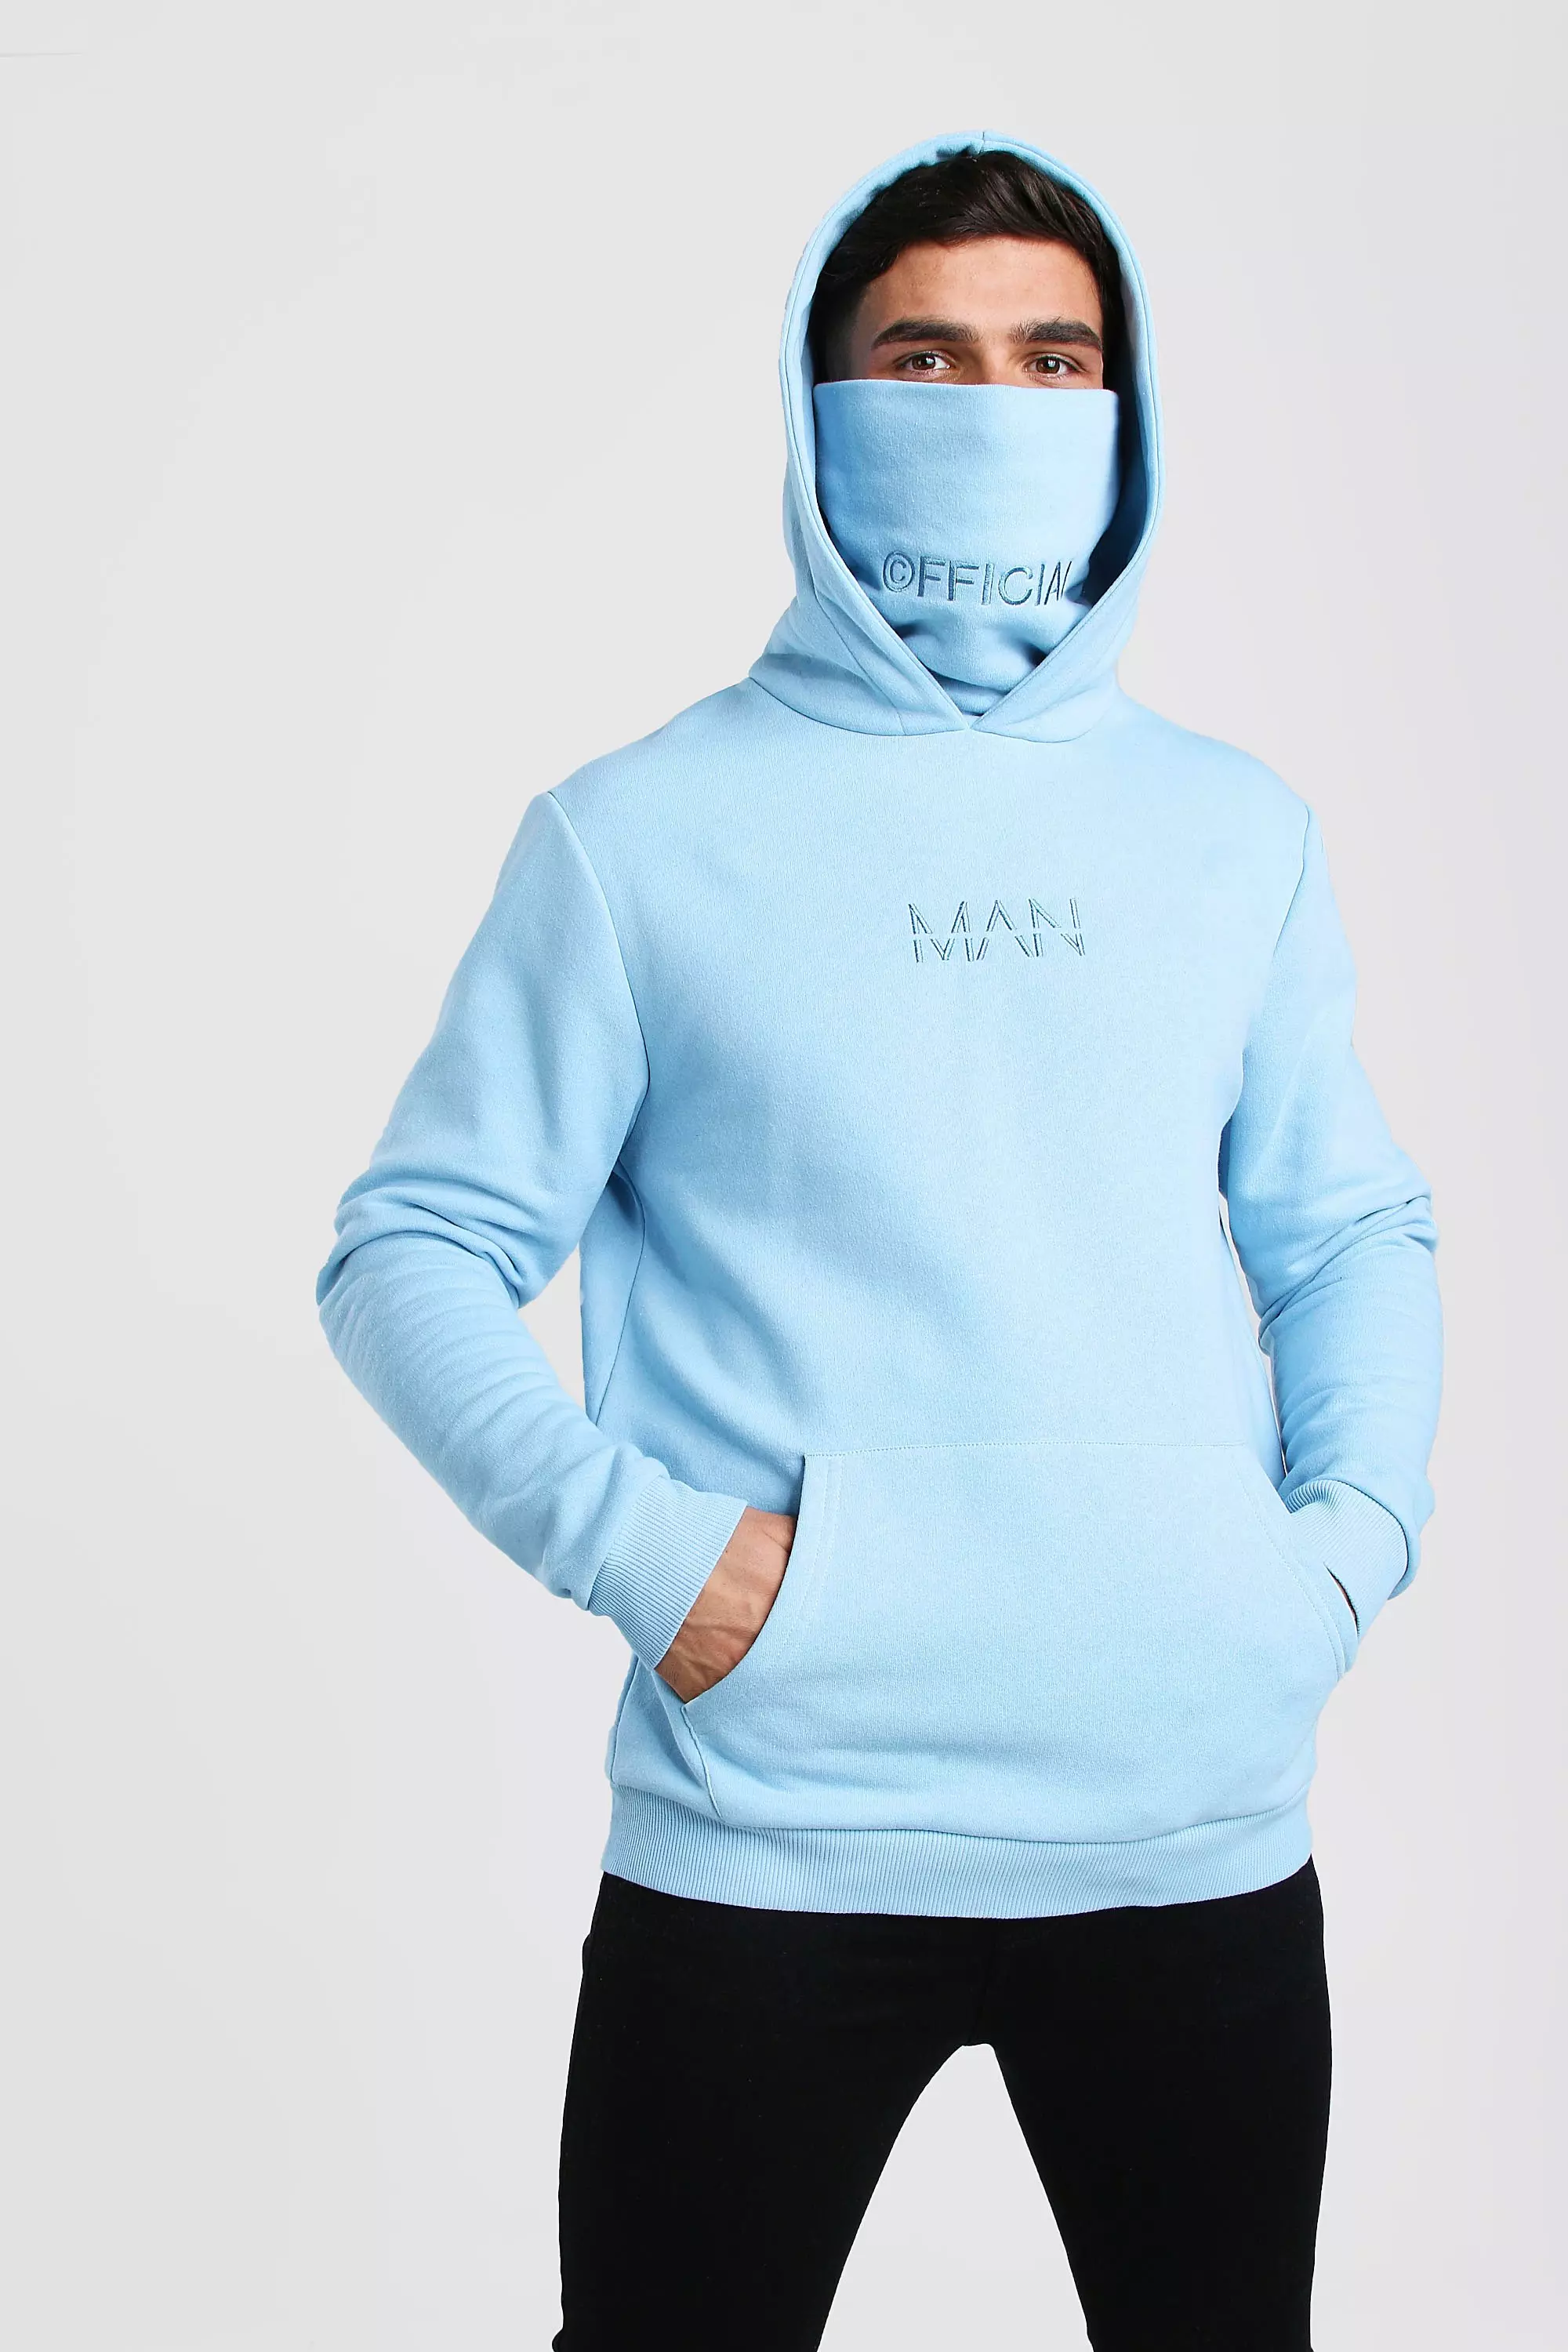 ililil Neon Blue high neck Jersey hoodie